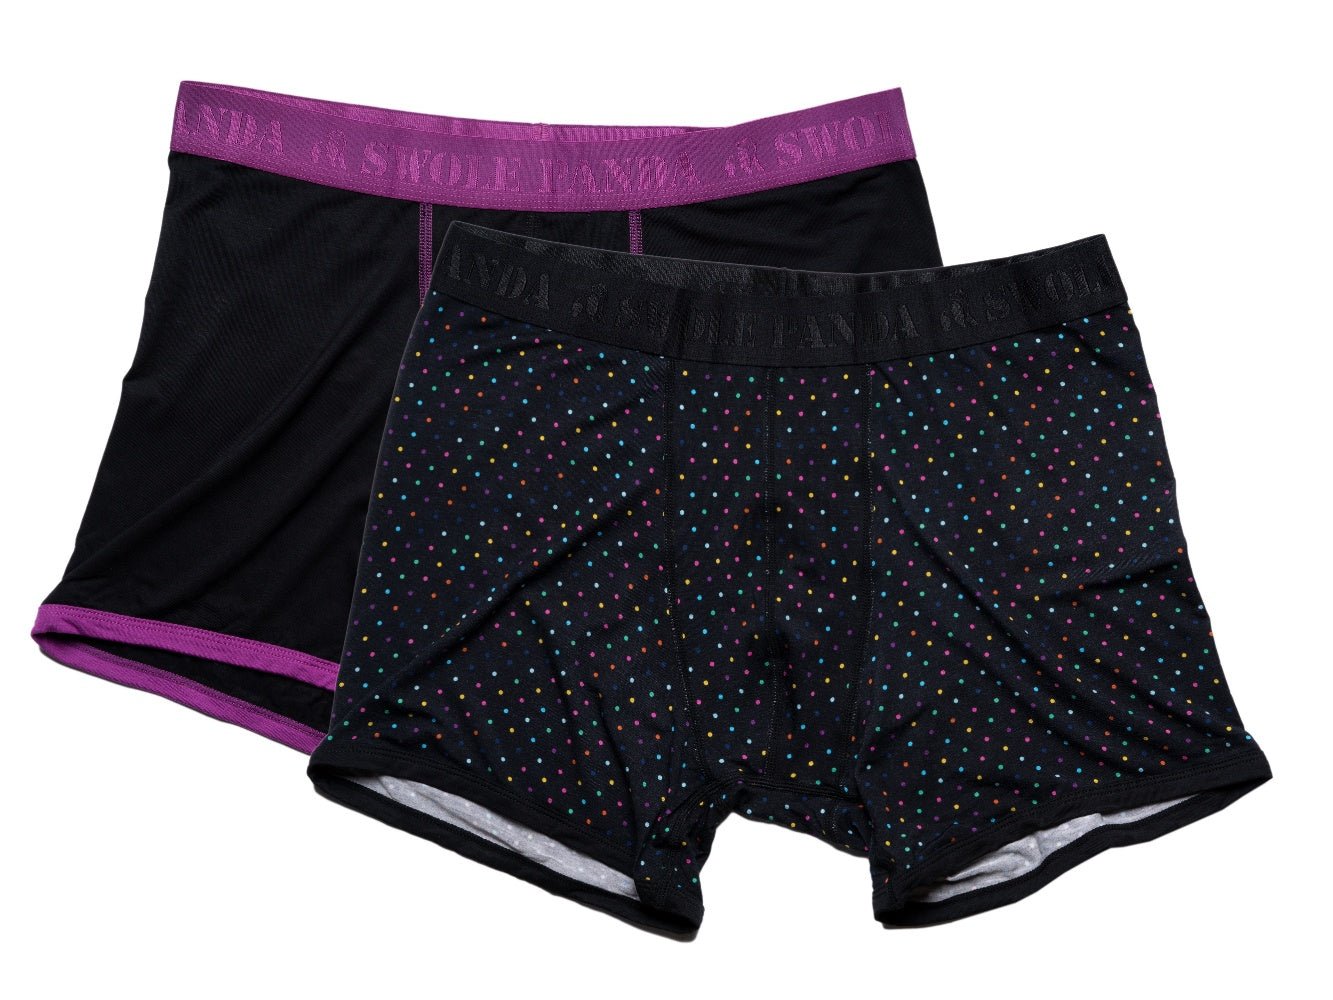 underwear-bamboo-boxers-2-pack-purple-black-multi-spot-1_0ed60da1-06e2-4eb9-bacd-48e8f5ef1ac0.jpg